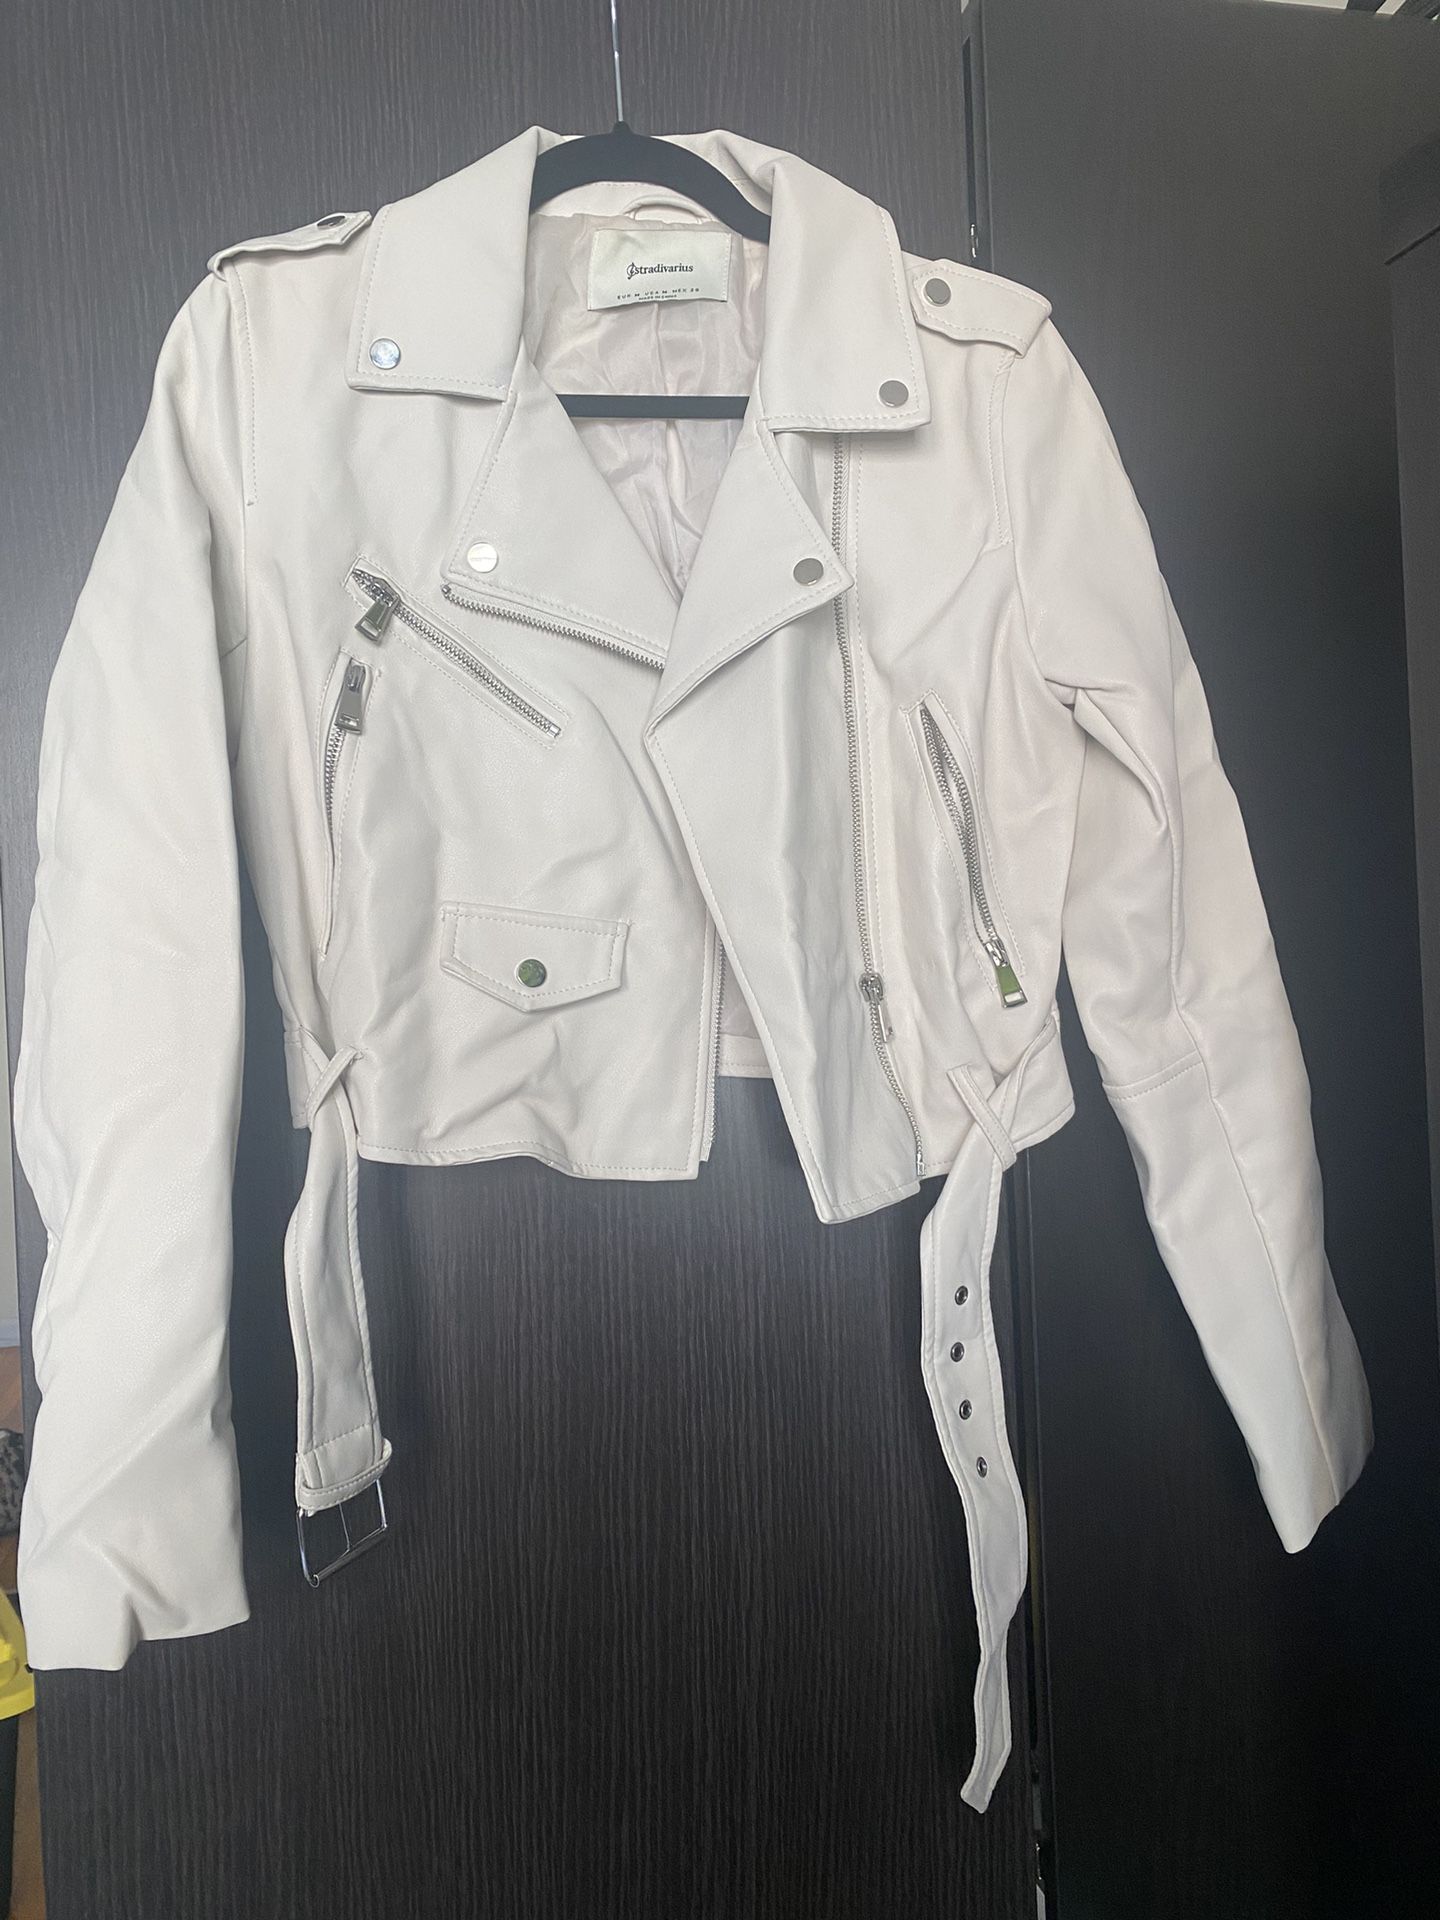 White/Cream Leather Jacket (M)